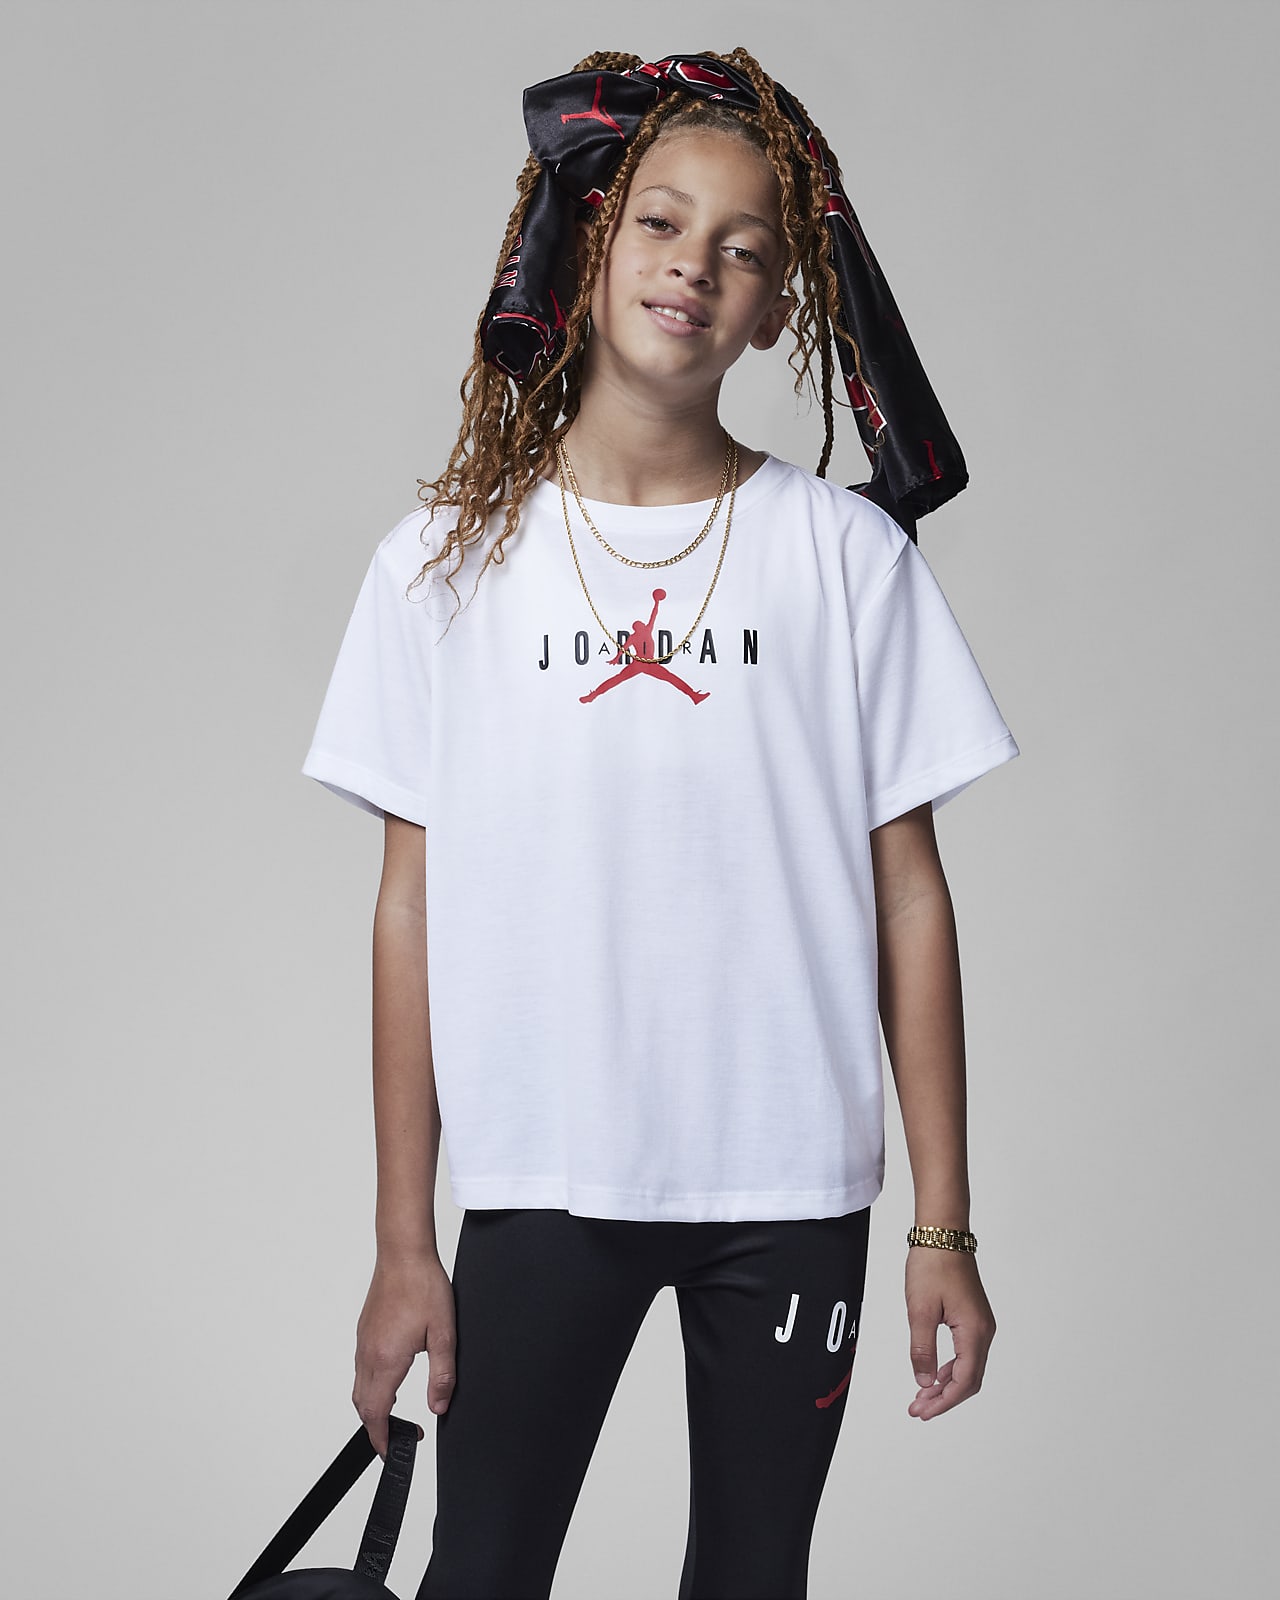 Camiseta Nike Jordan niño